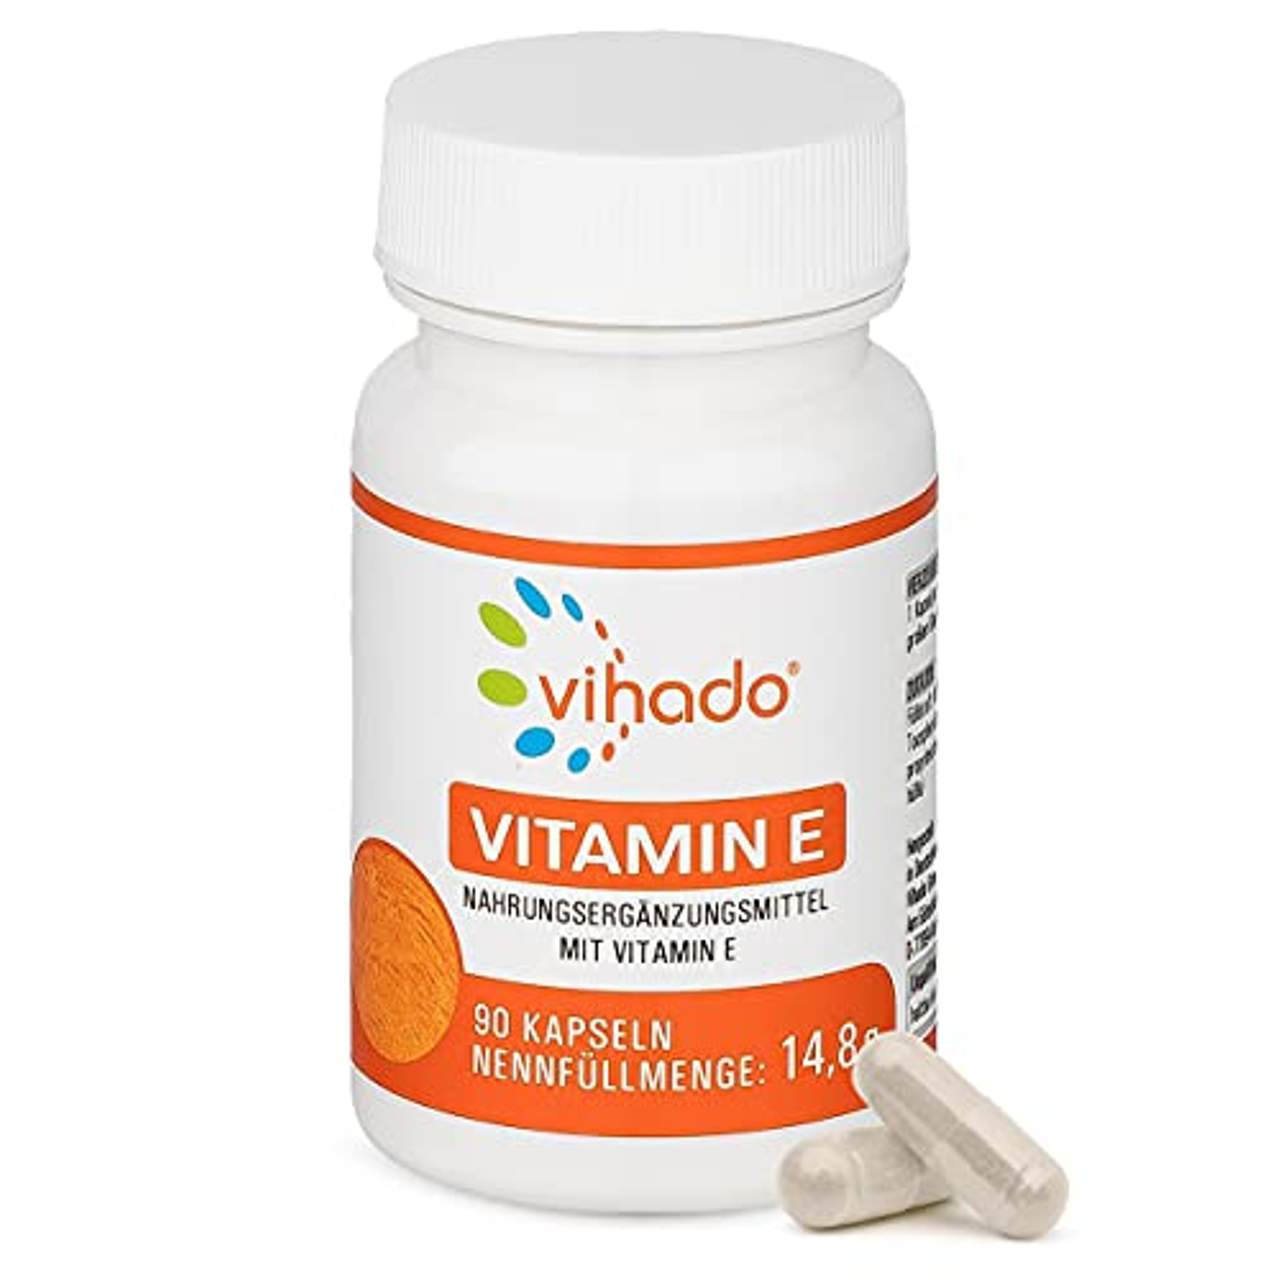 Vihado Vitamin E veganes Nahrungsergänzungsmittel